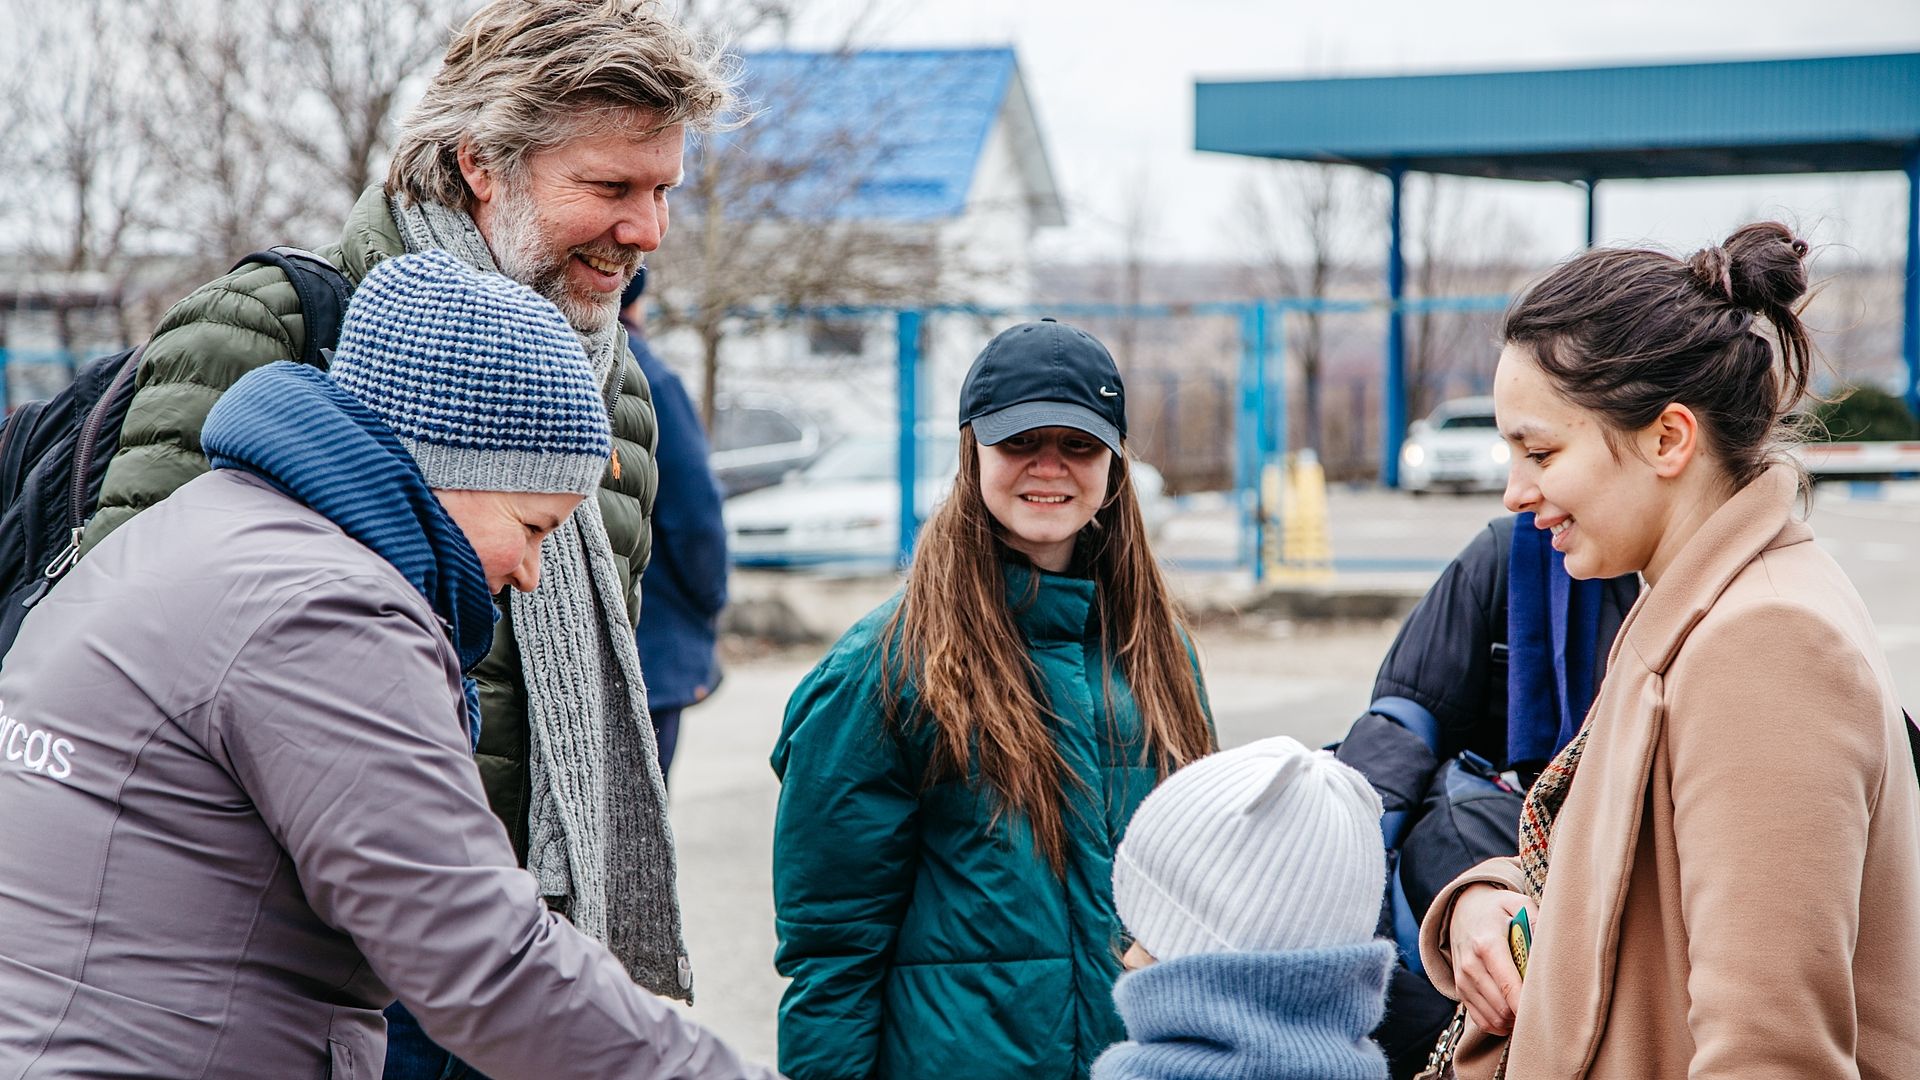 Lees ook: Arjan Lock bezoekt vluchtelingen uit Oekraïne